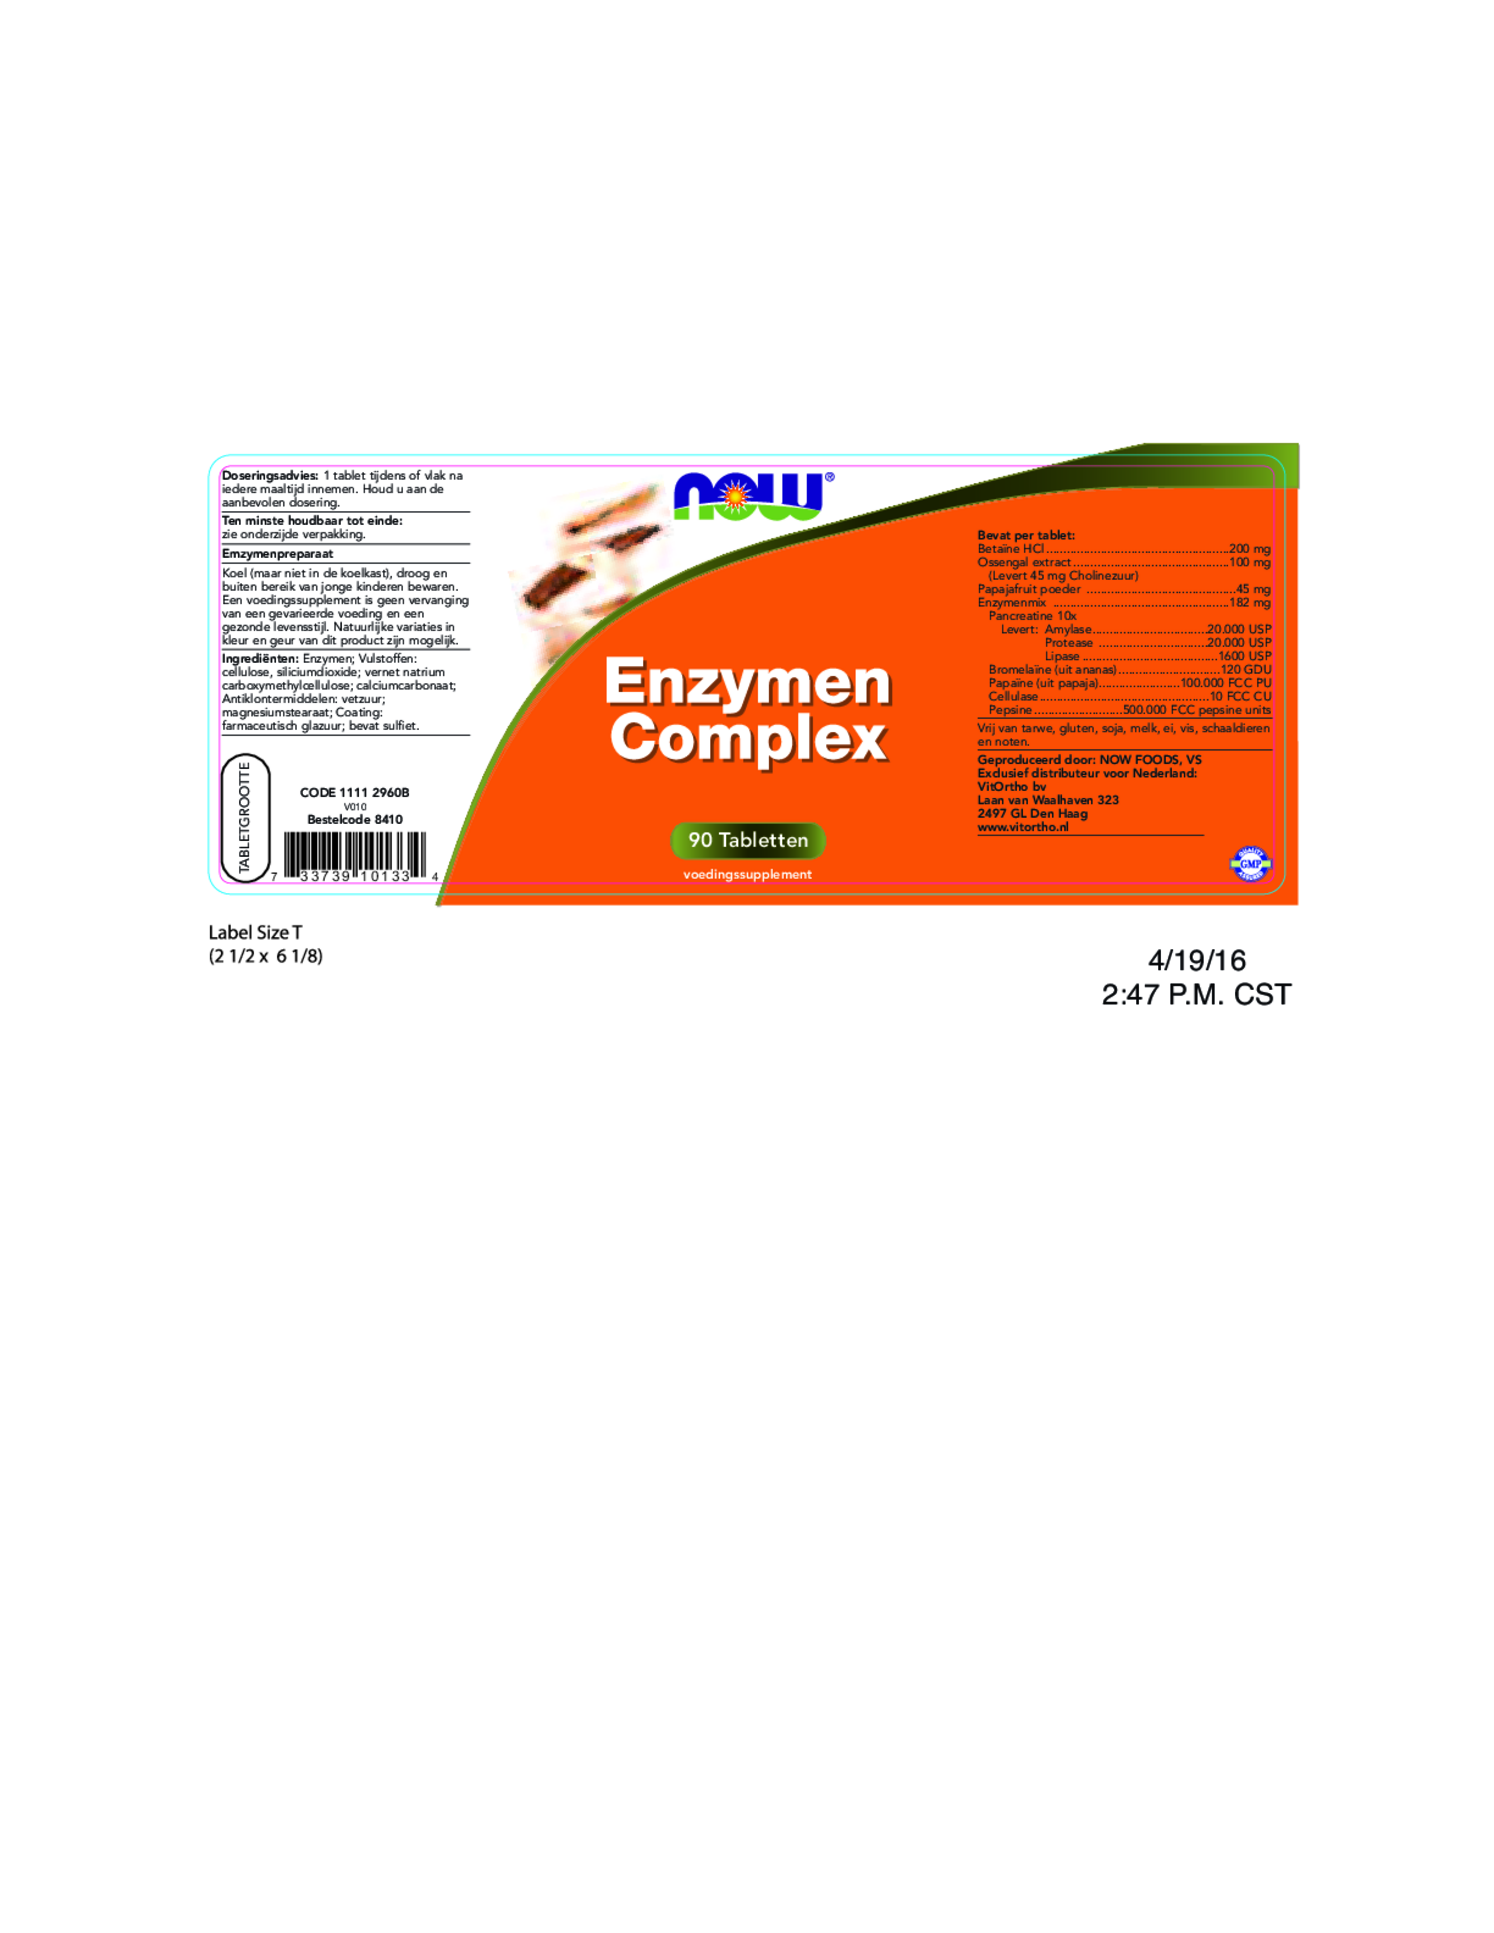 Enzymen Complex Tabletten afbeelding van document #1, etiket